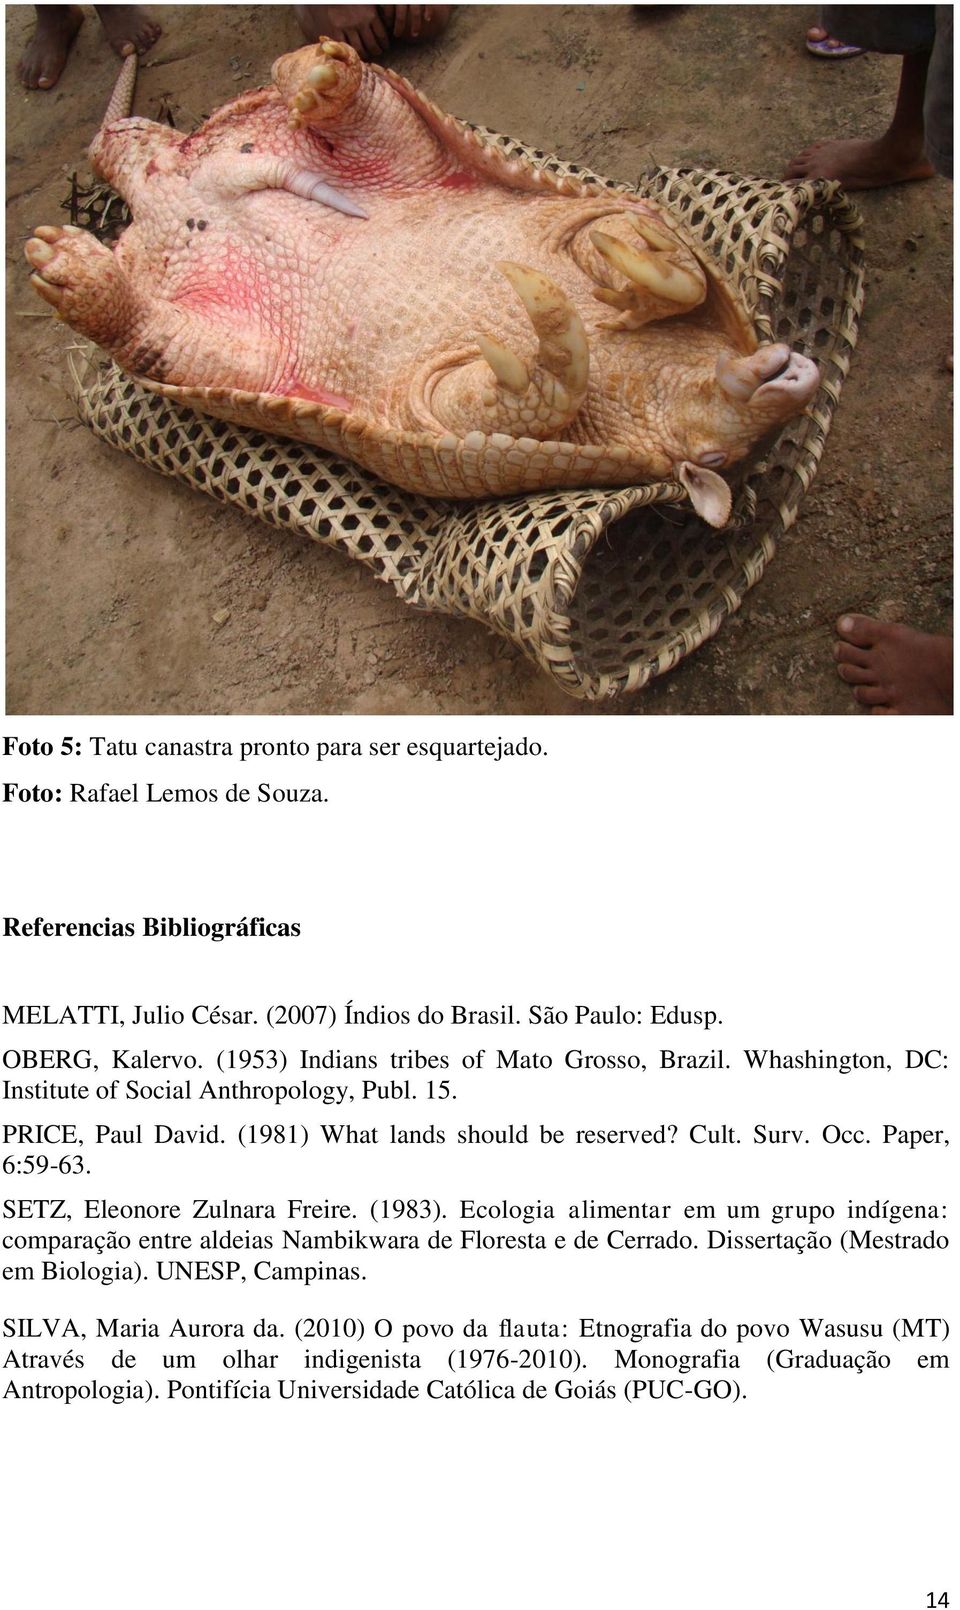 SETZ, Eleonore Zulnara Freire. (1983). Ecologia alimentar em um grupo indígena: comparação entre aldeias Nambikwara de Floresta e de Cerrado. Dissertação (Mestrado em Biologia). UNESP, Campinas.